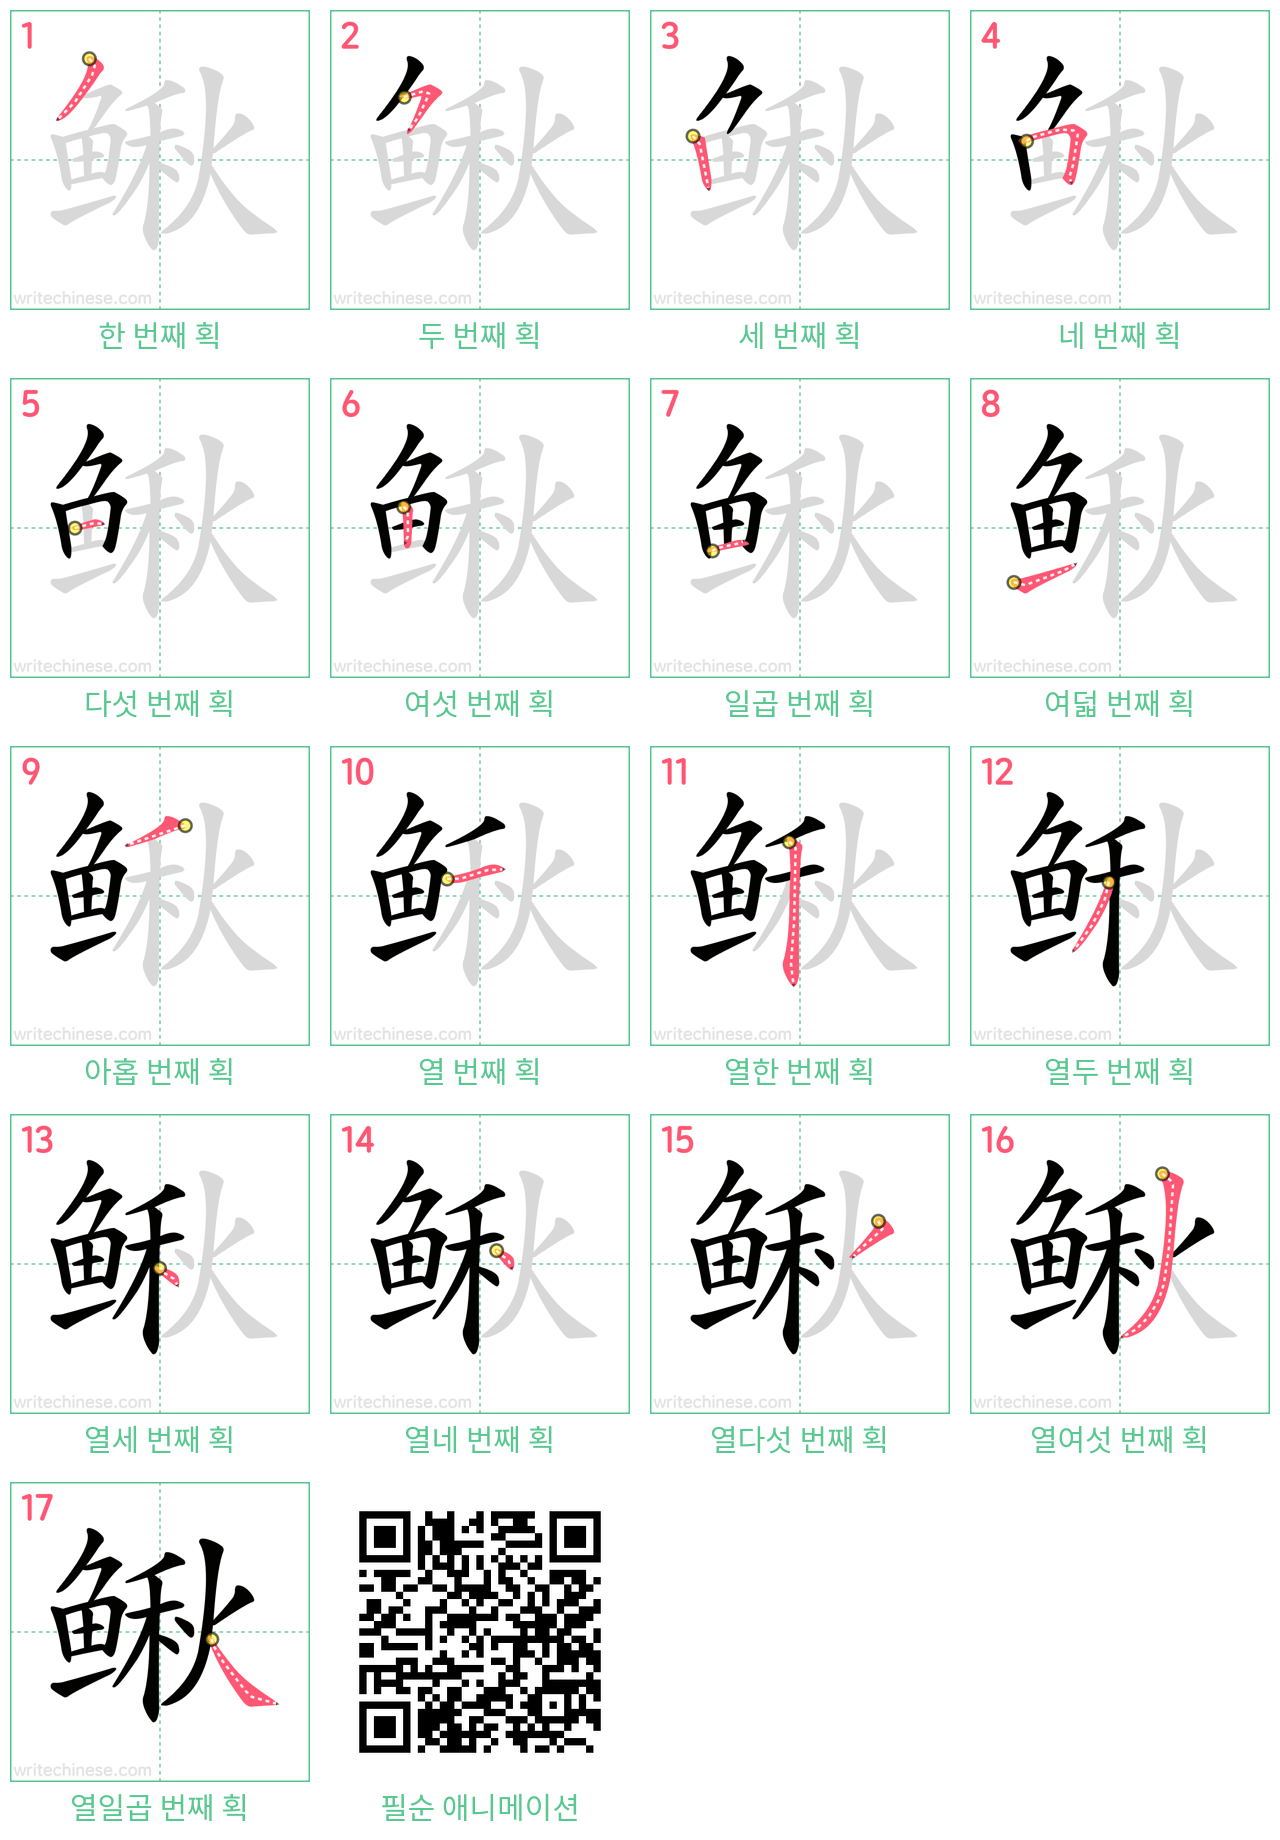 鳅 step-by-step stroke order diagrams